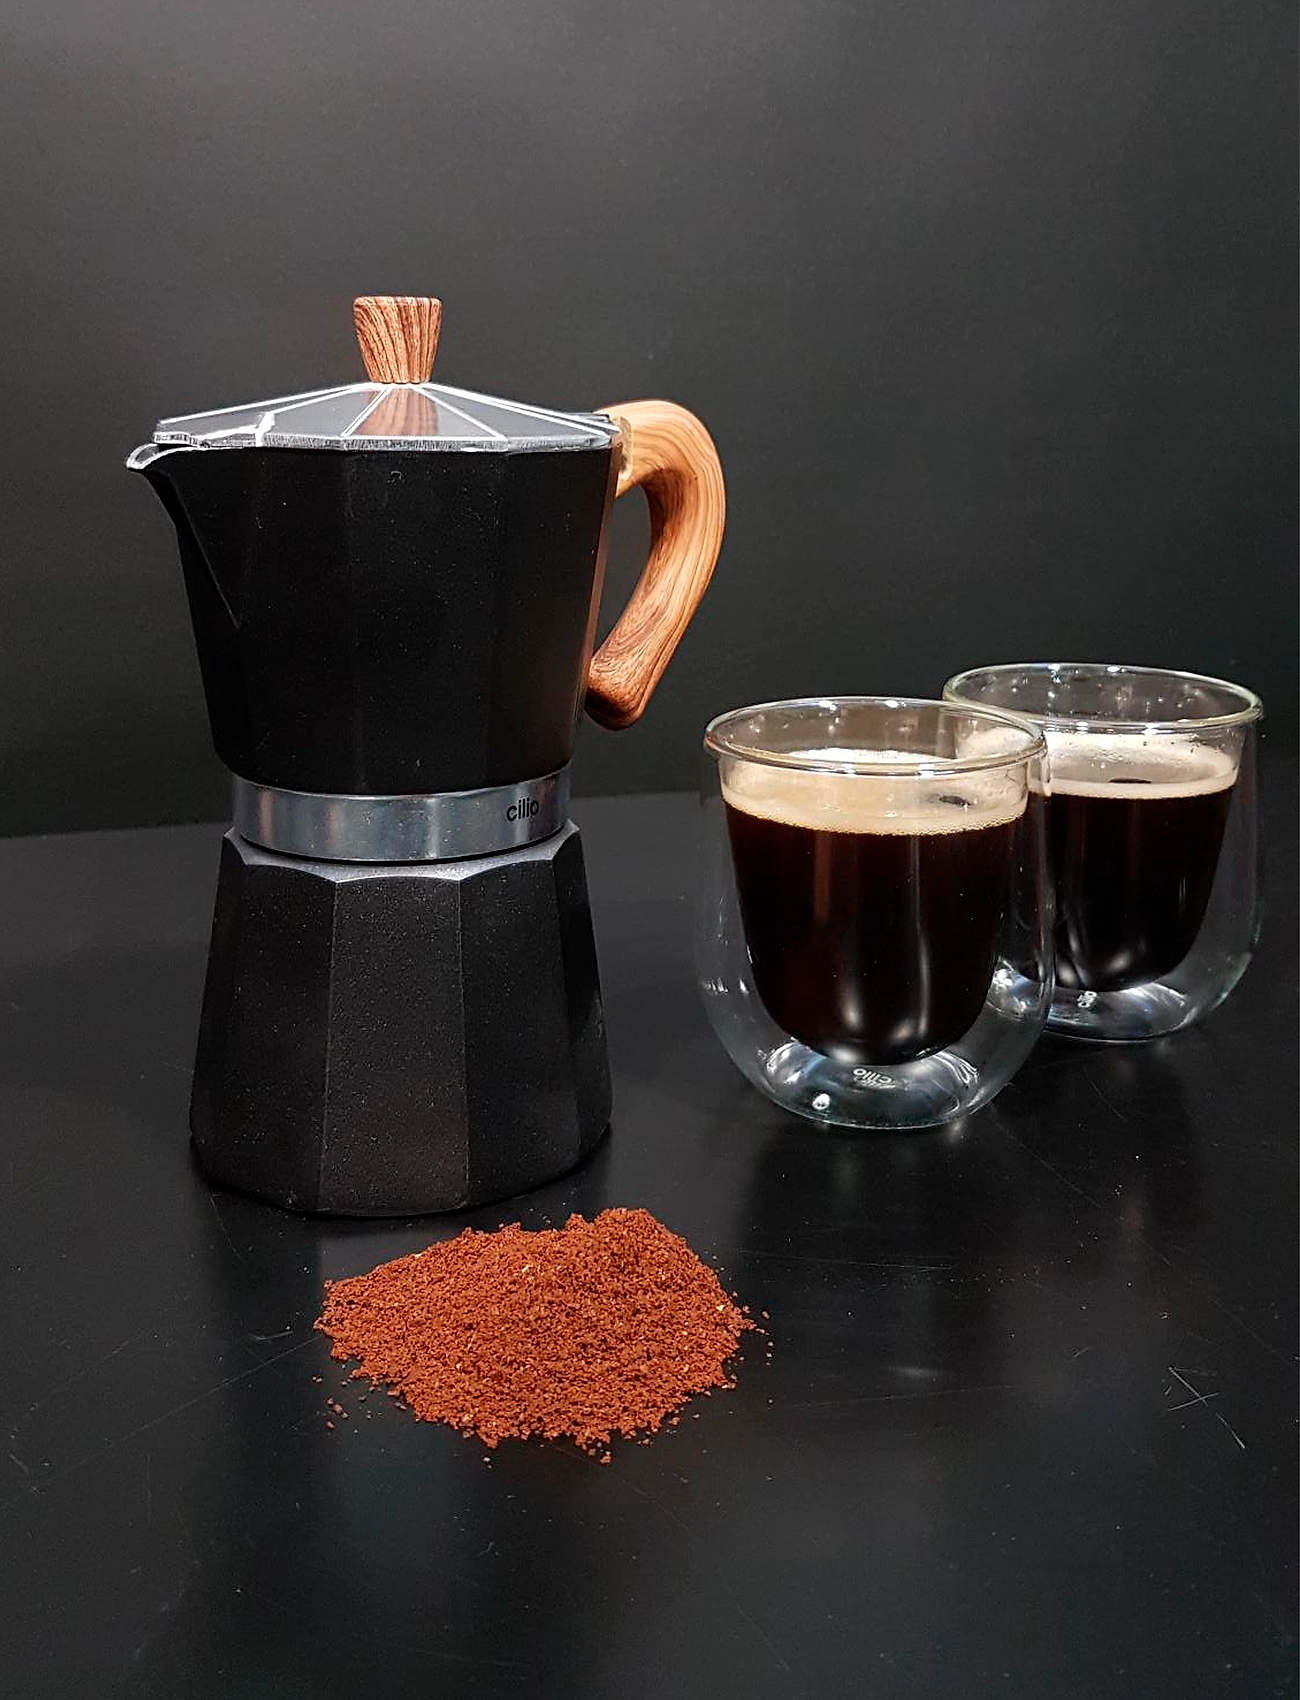 cilio - Espresso maker CLASSICO NATURA 3 cups - mokapotten - black - 1